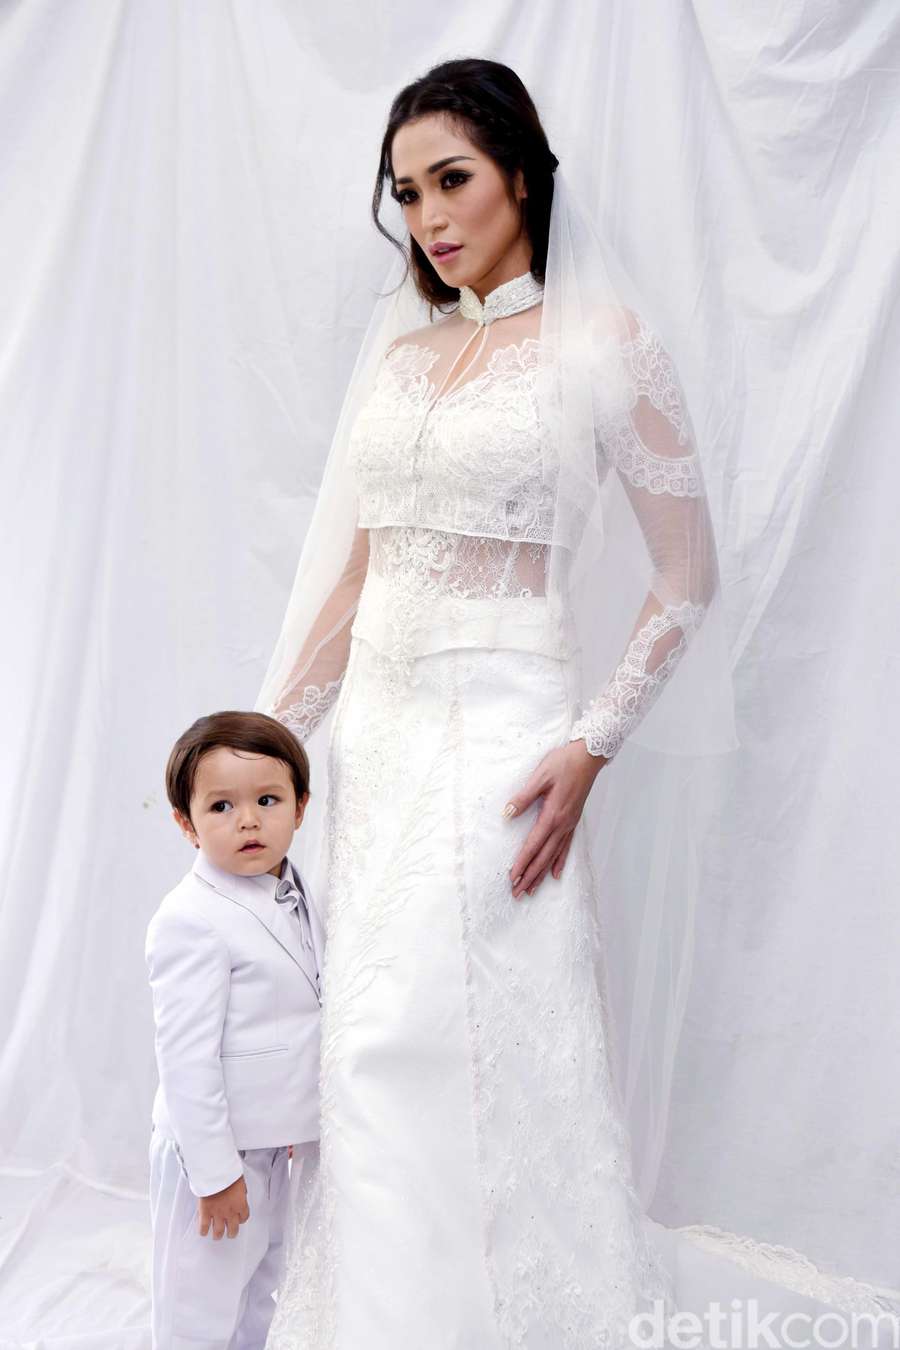 Jessica Iskandar Dengan Gaun Pengantin Siapa Mempelai Cowoknya